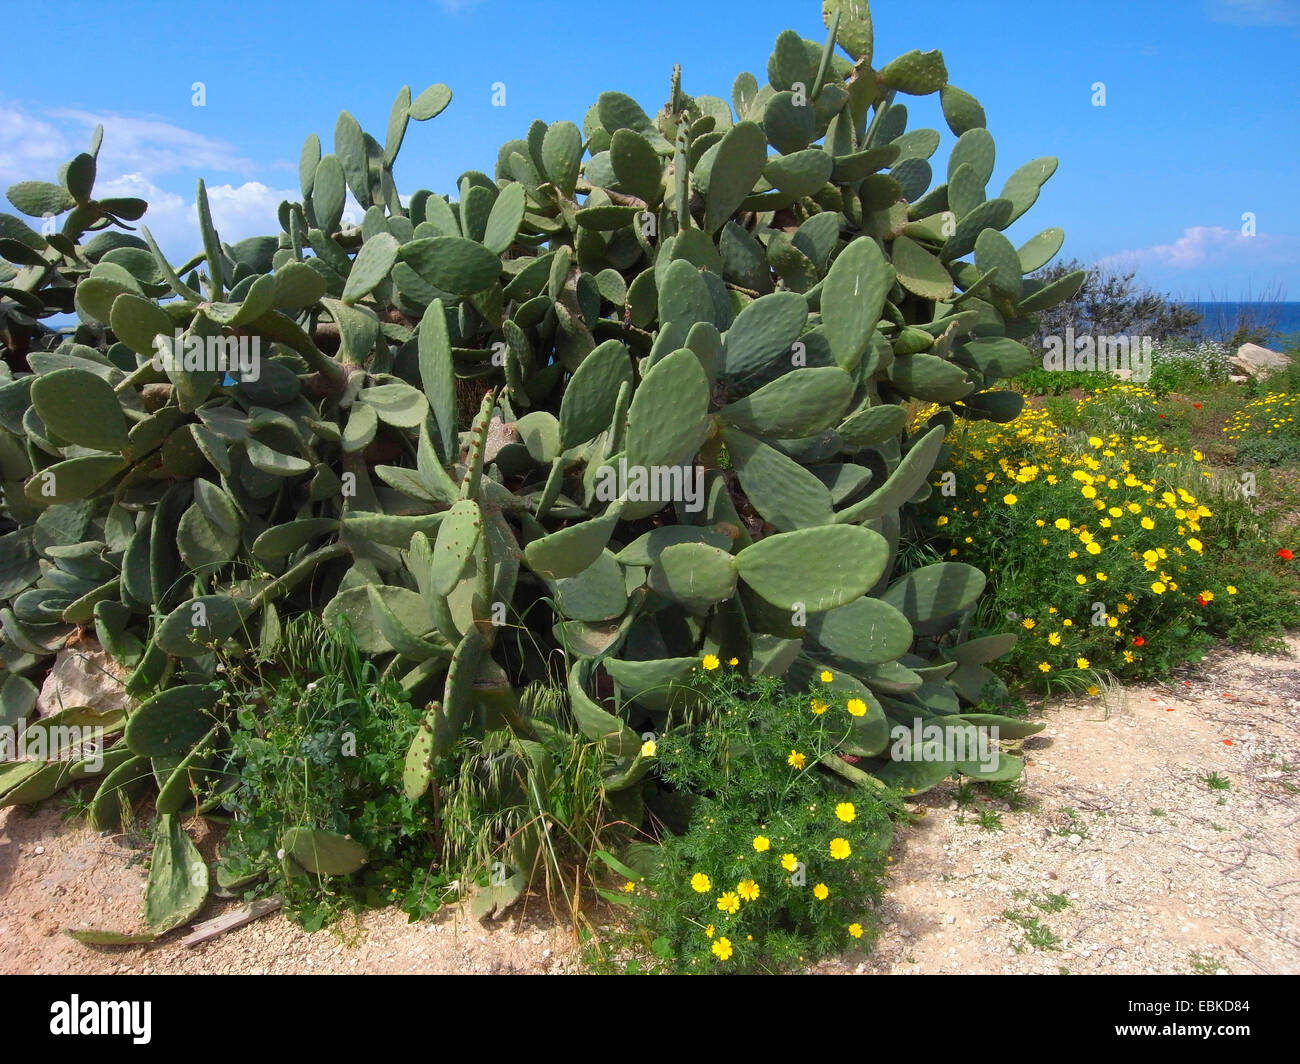 Indian fig, cactus pear (Opuntia ficus-indica, Opuntia ficus-barbarica), on Mediterranean coast, Cyprus Stock Photo